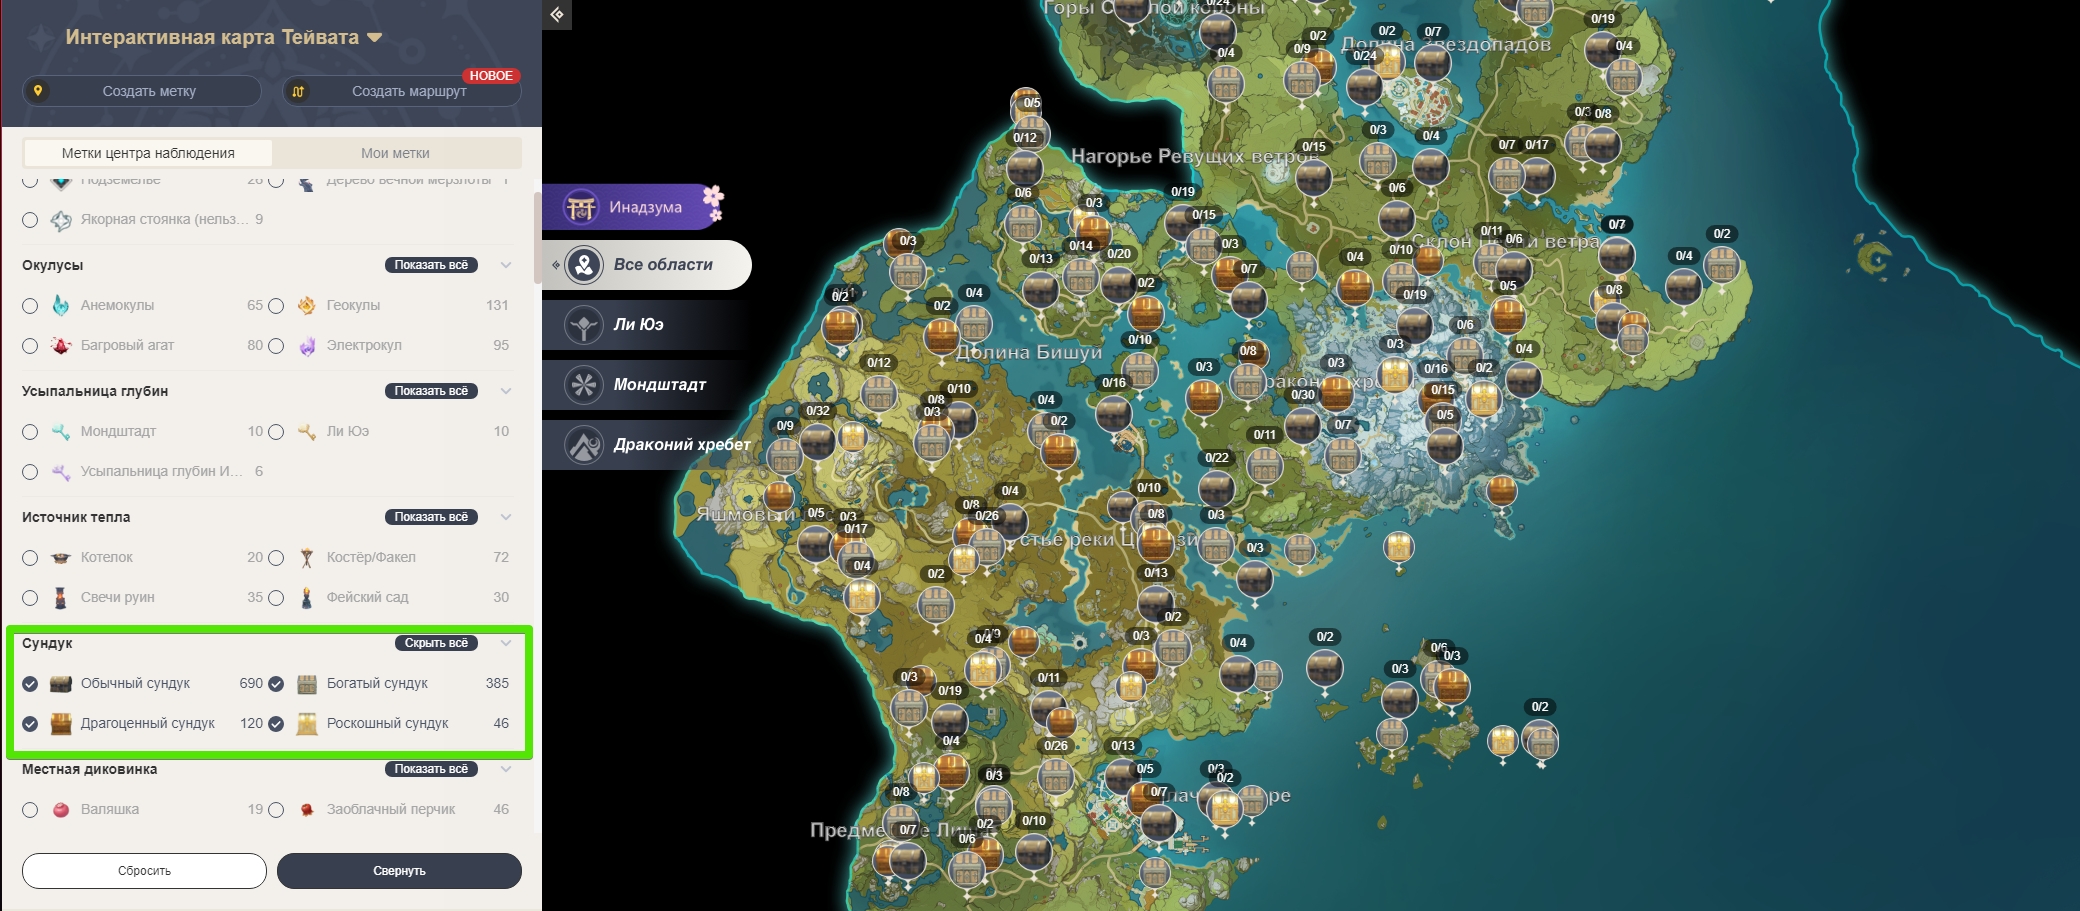 Геншин игра карта. Опыт персонажа Геншин Импакт. Интерактивная карта. Интерактивная карта игр. Кристальный костный мозг.